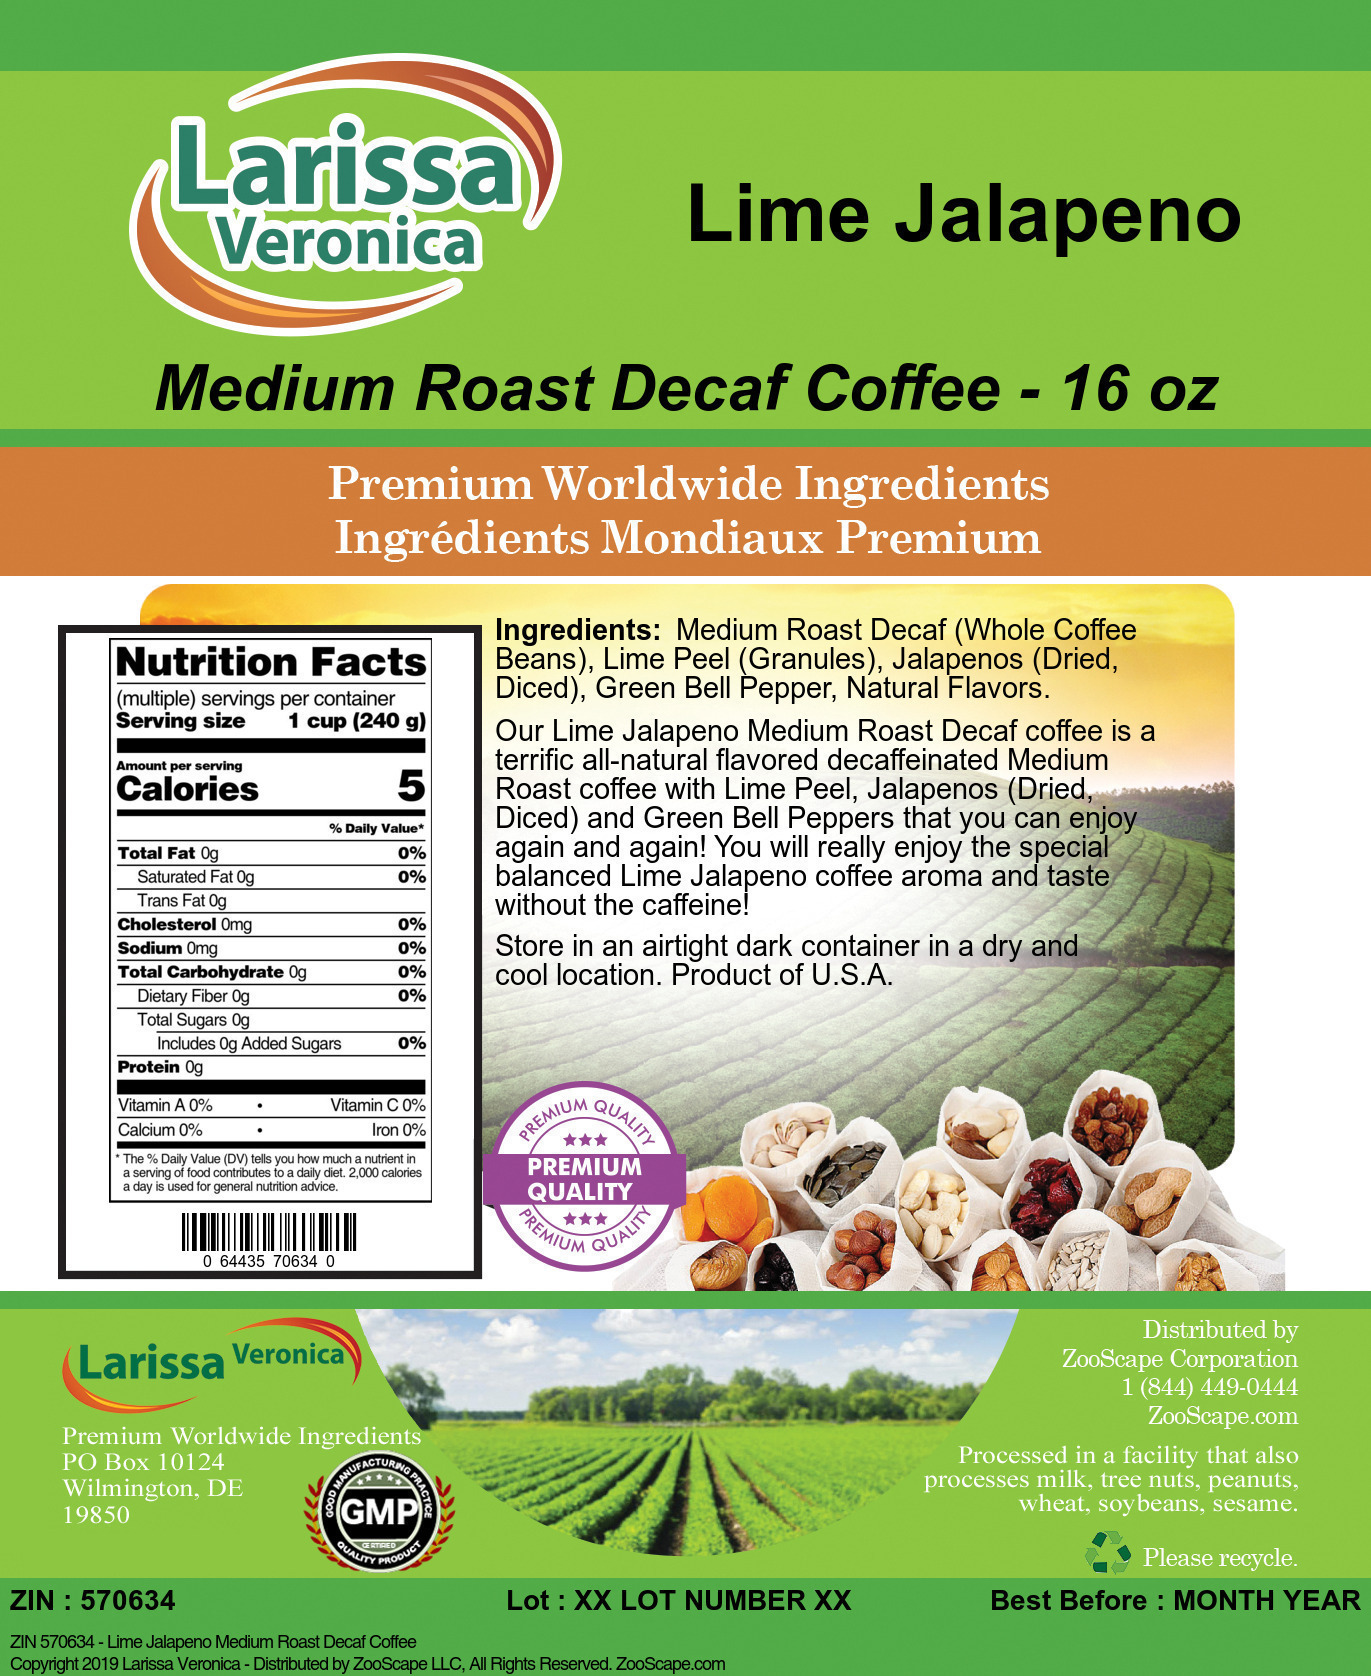 Lime Jalapeno Medium Roast Decaf Coffee - Label